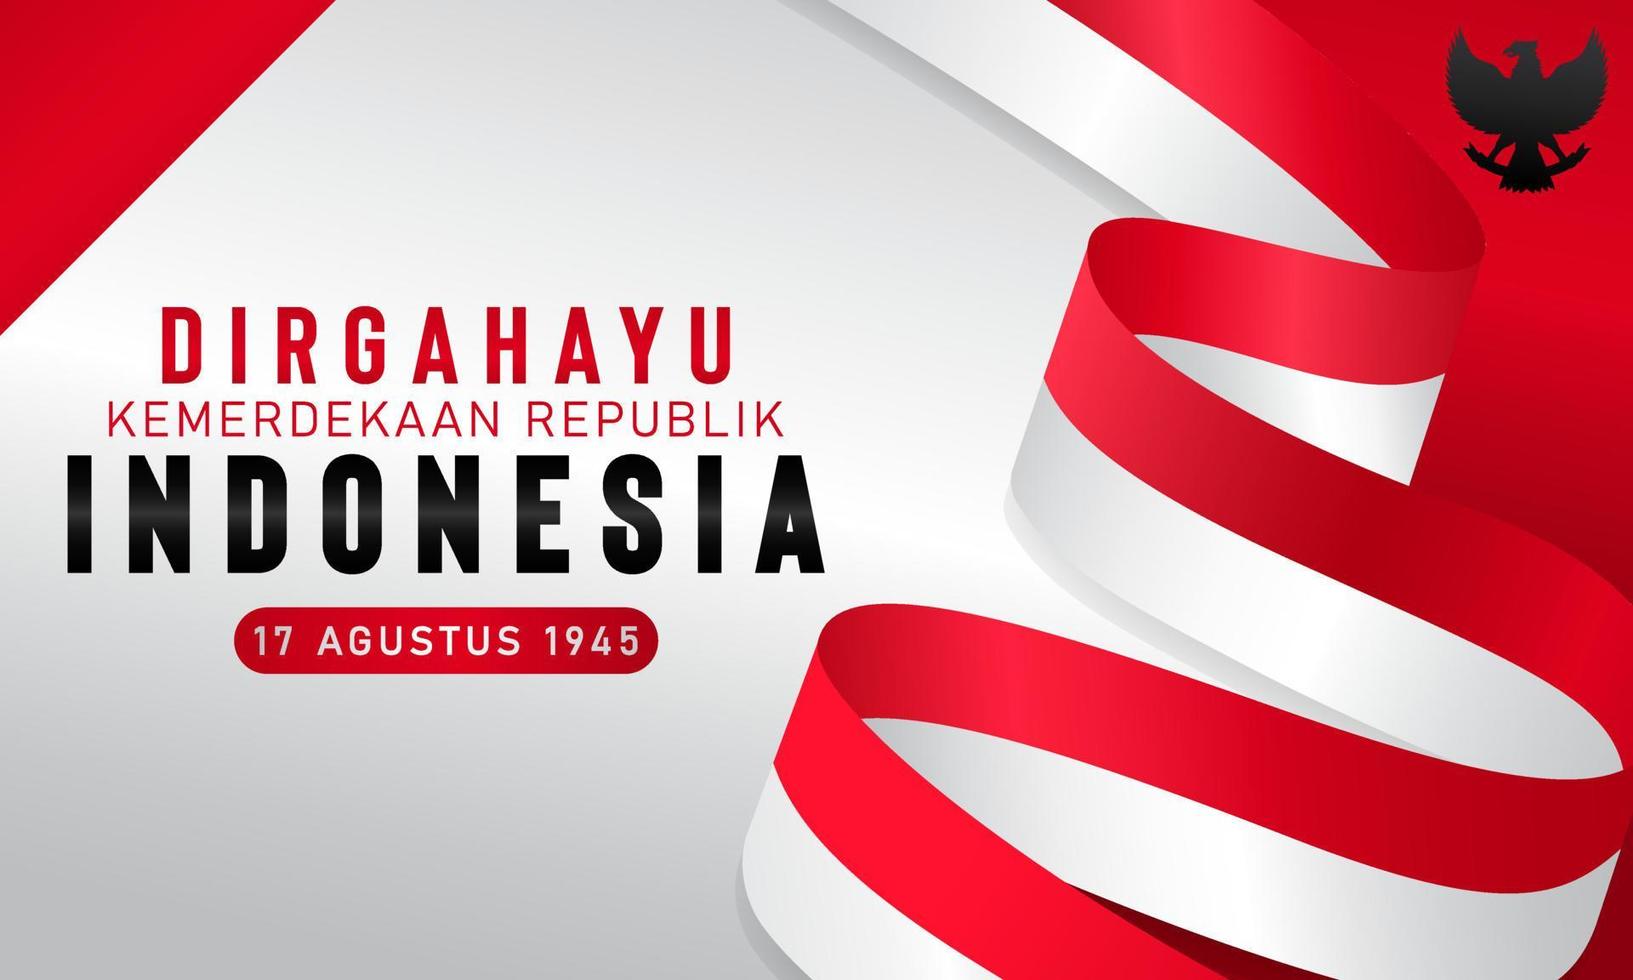 feliz día de la independencia de indonesia. dirgahayu republik indonesia, que significa larga vida a indonesia. fondo del día de la independencia de indonesia el 17 de agosto. ilustración vectorial vector